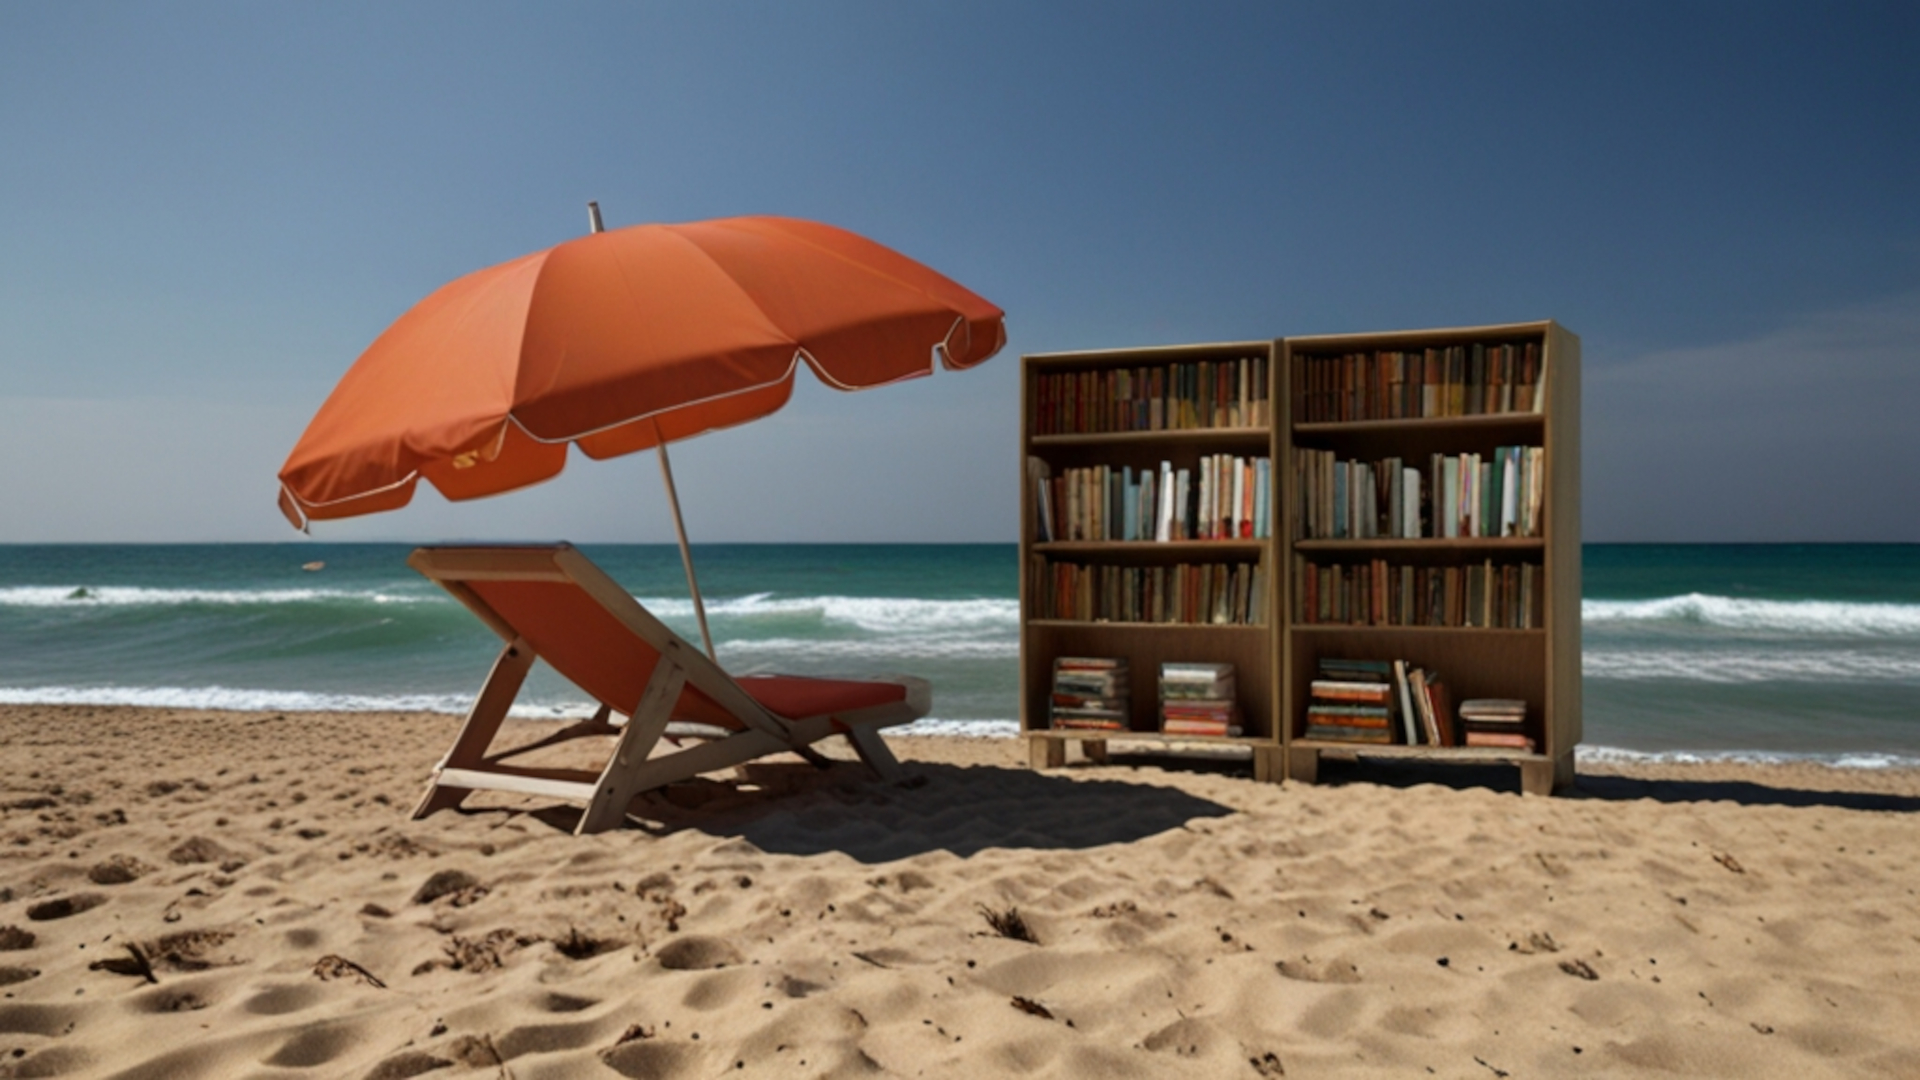 Spiagge per lettori: un paradiso di silenzio e lettura